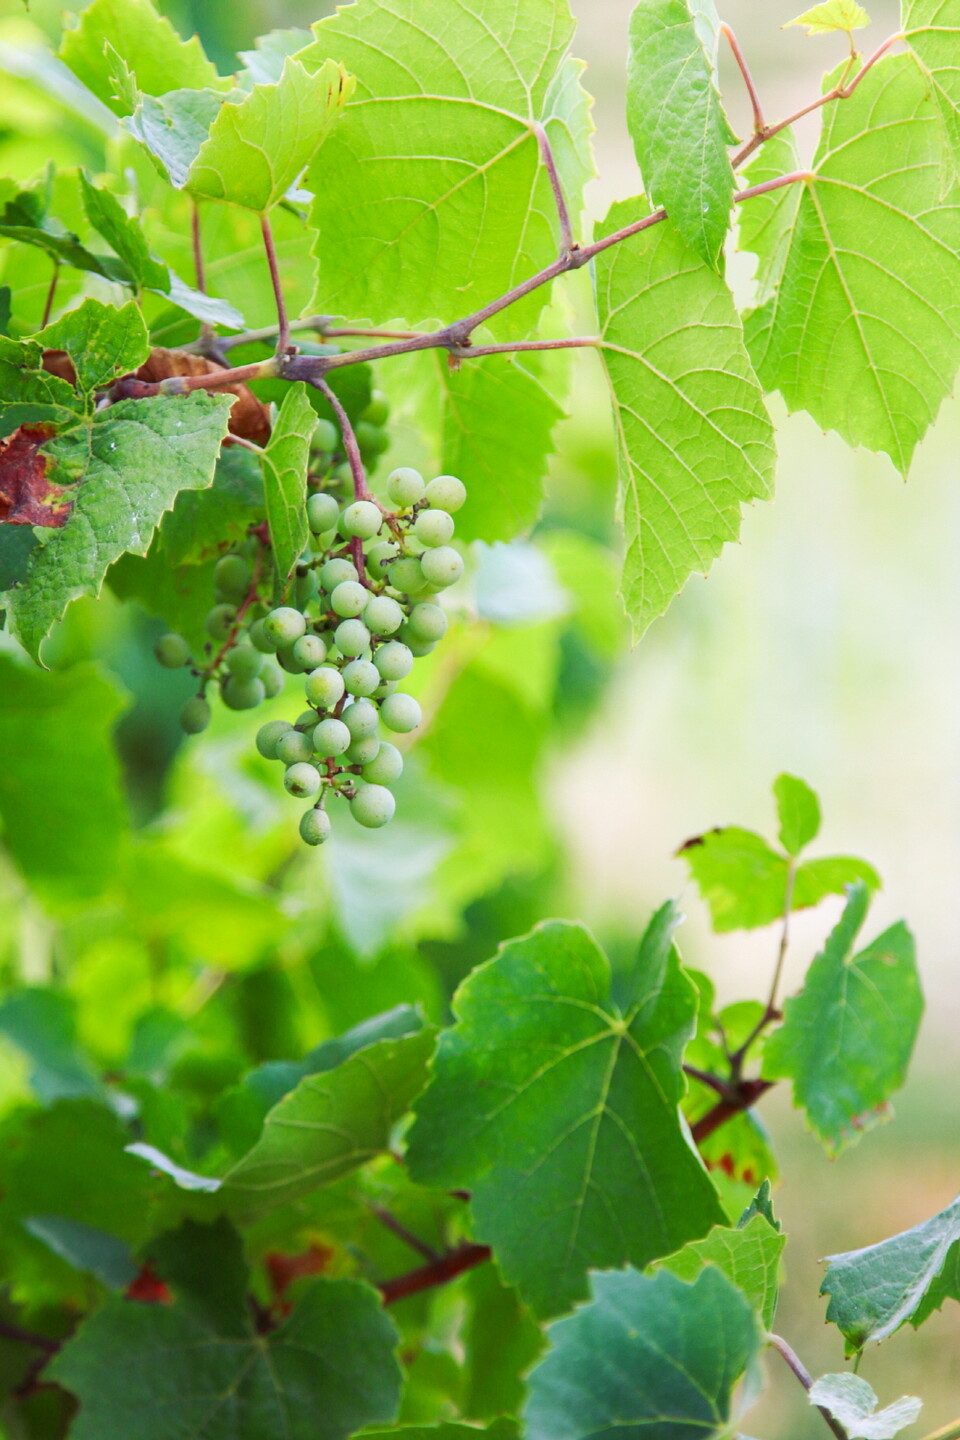 샤토 드 라 셰이즈는 가메 품종으로 와인을 만든다. 최근에는 샤도네이 포도도 수확하기 시작했다